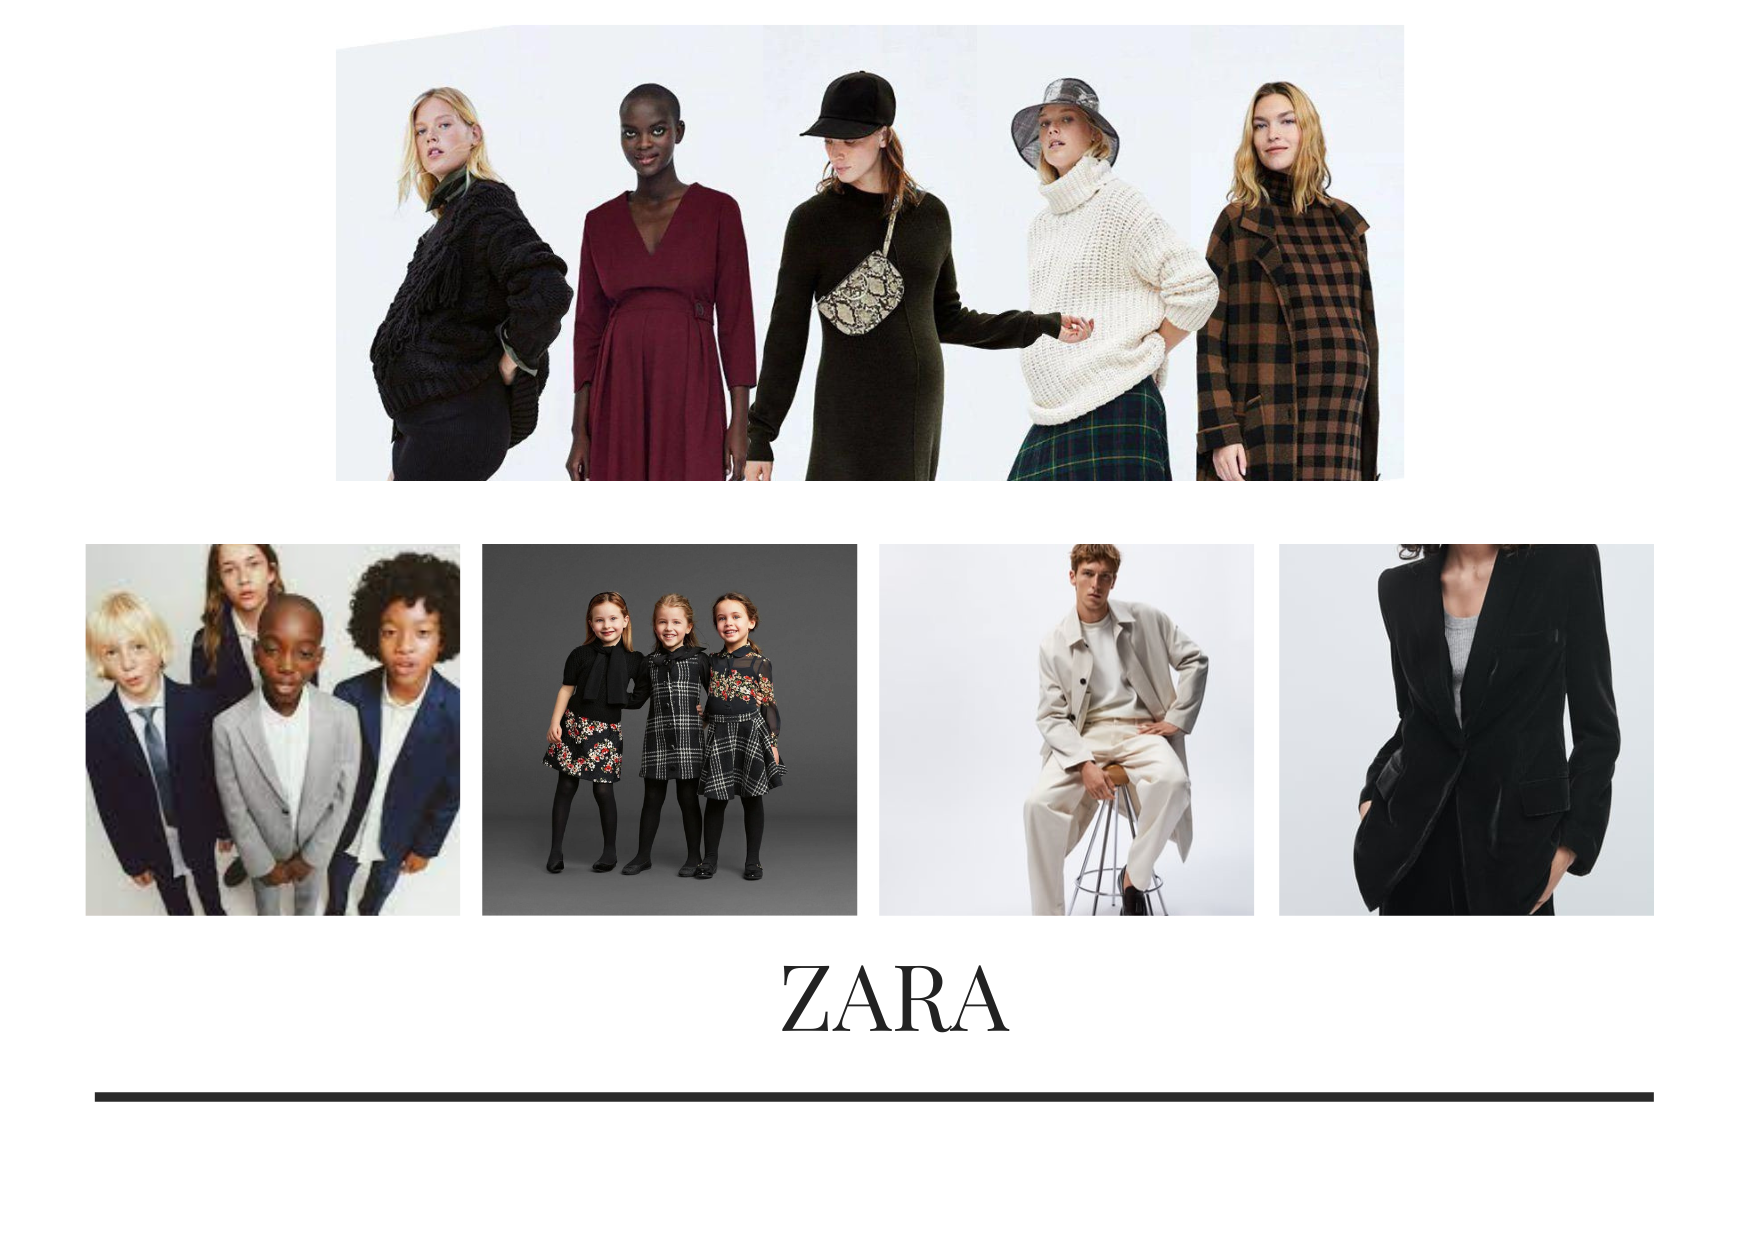 Phong cơ hội năng động đa dạng mẫu mã, cao cấp kể từ căn nhà kiểu mốt Zara